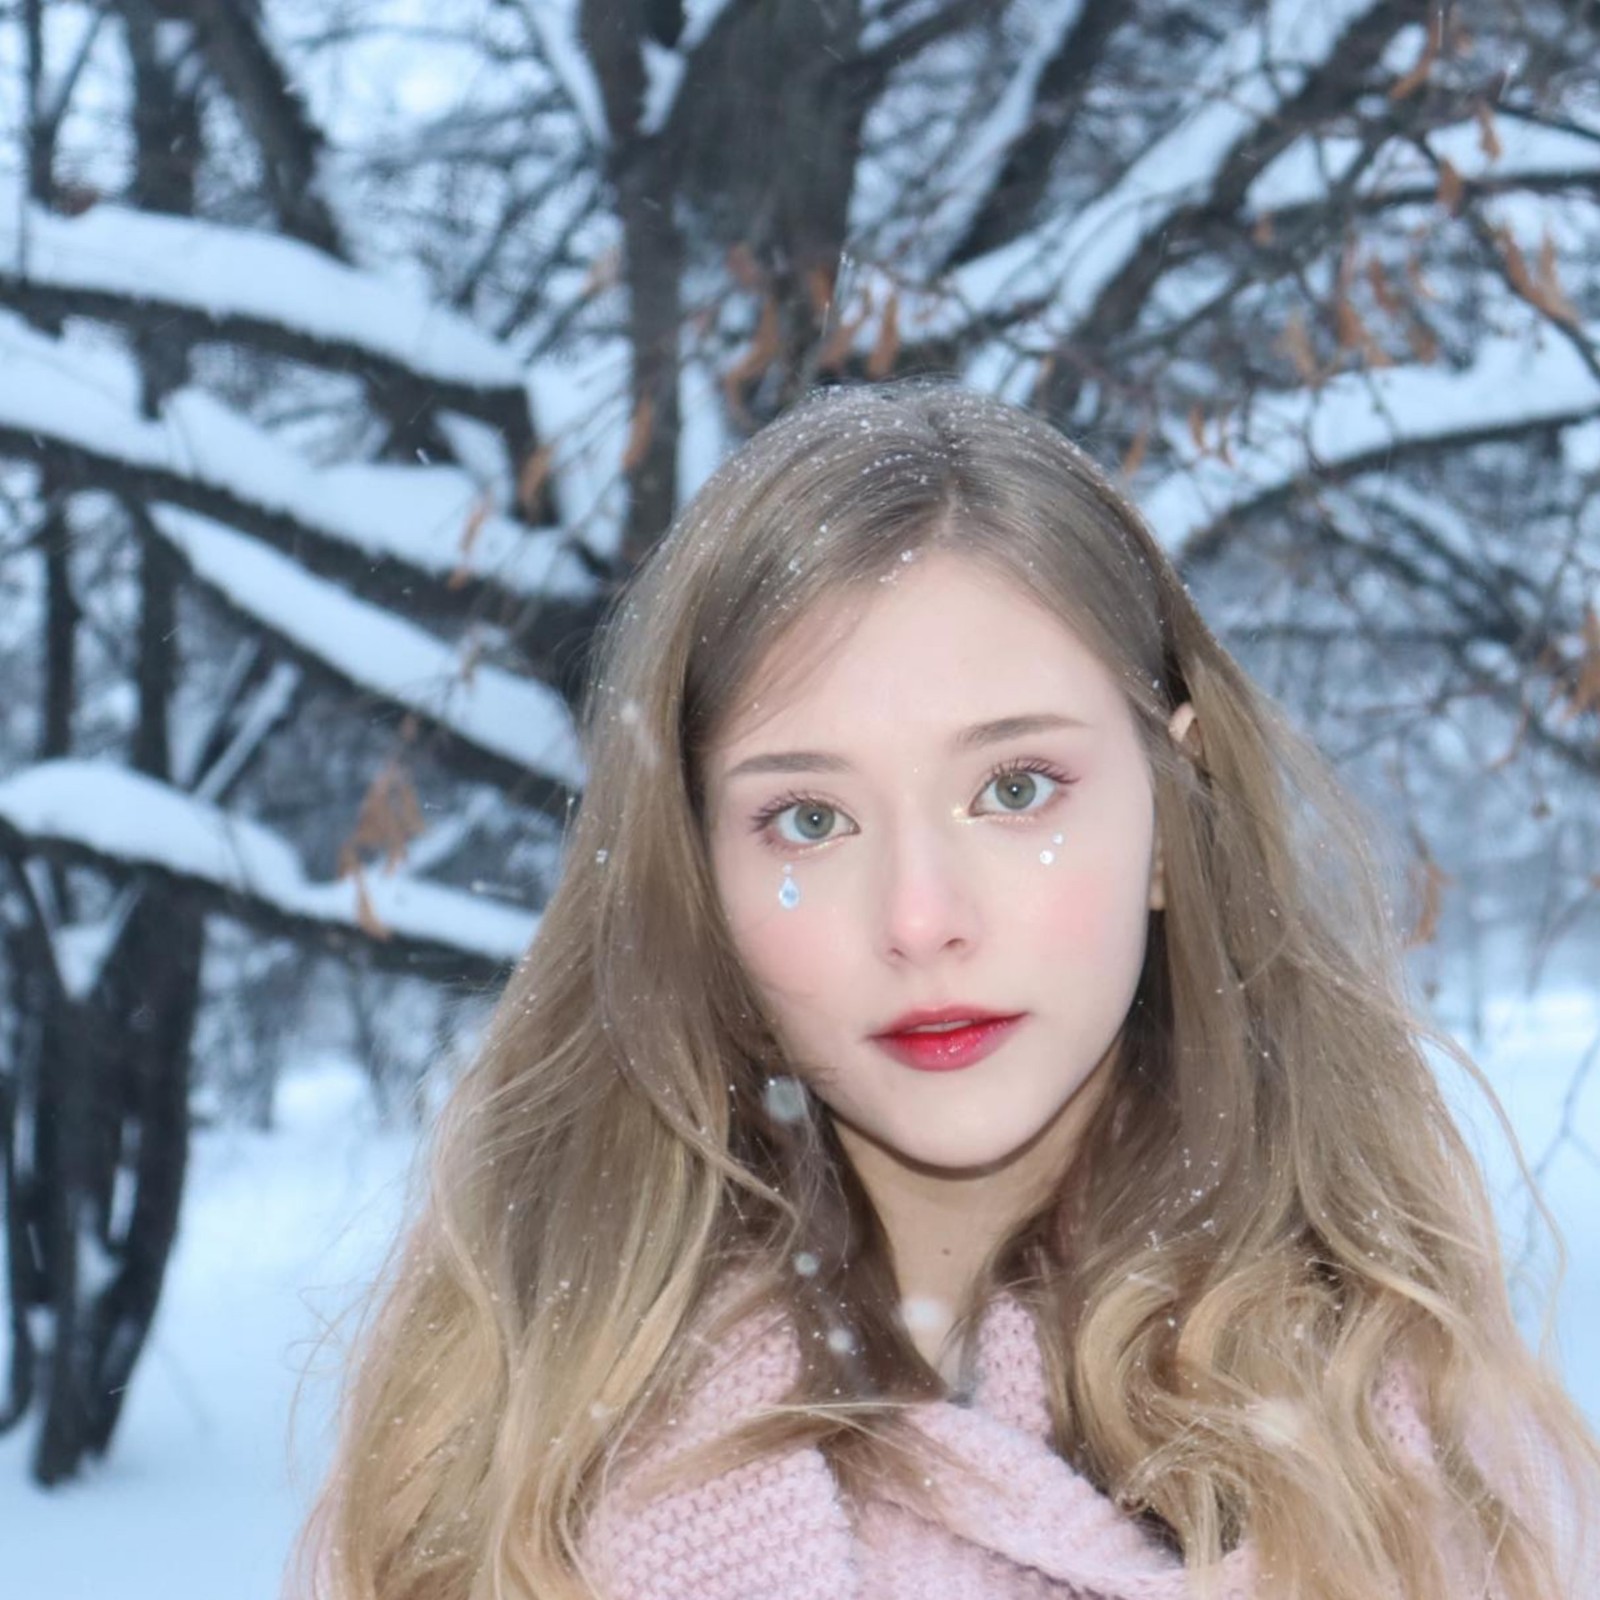 俄罗斯美女主播Lyasya福利图赏 漂亮脸蛋性感身材